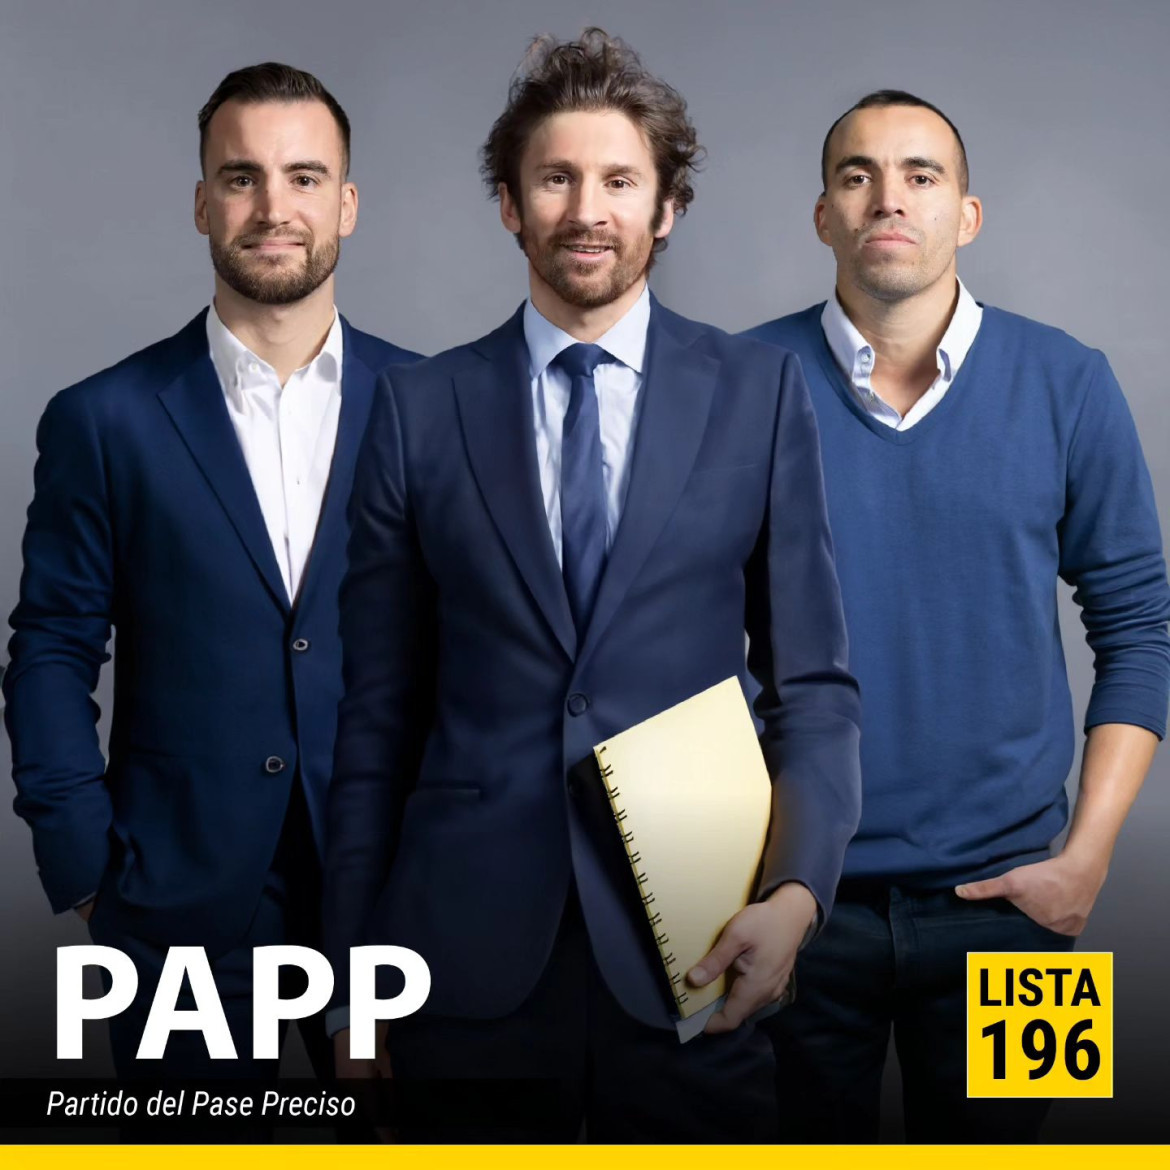 Lionel Messi, Marcos Acuña y Nicolás Tagliafico conforman PAPP. Foto: Instagram @ferdelucaok.